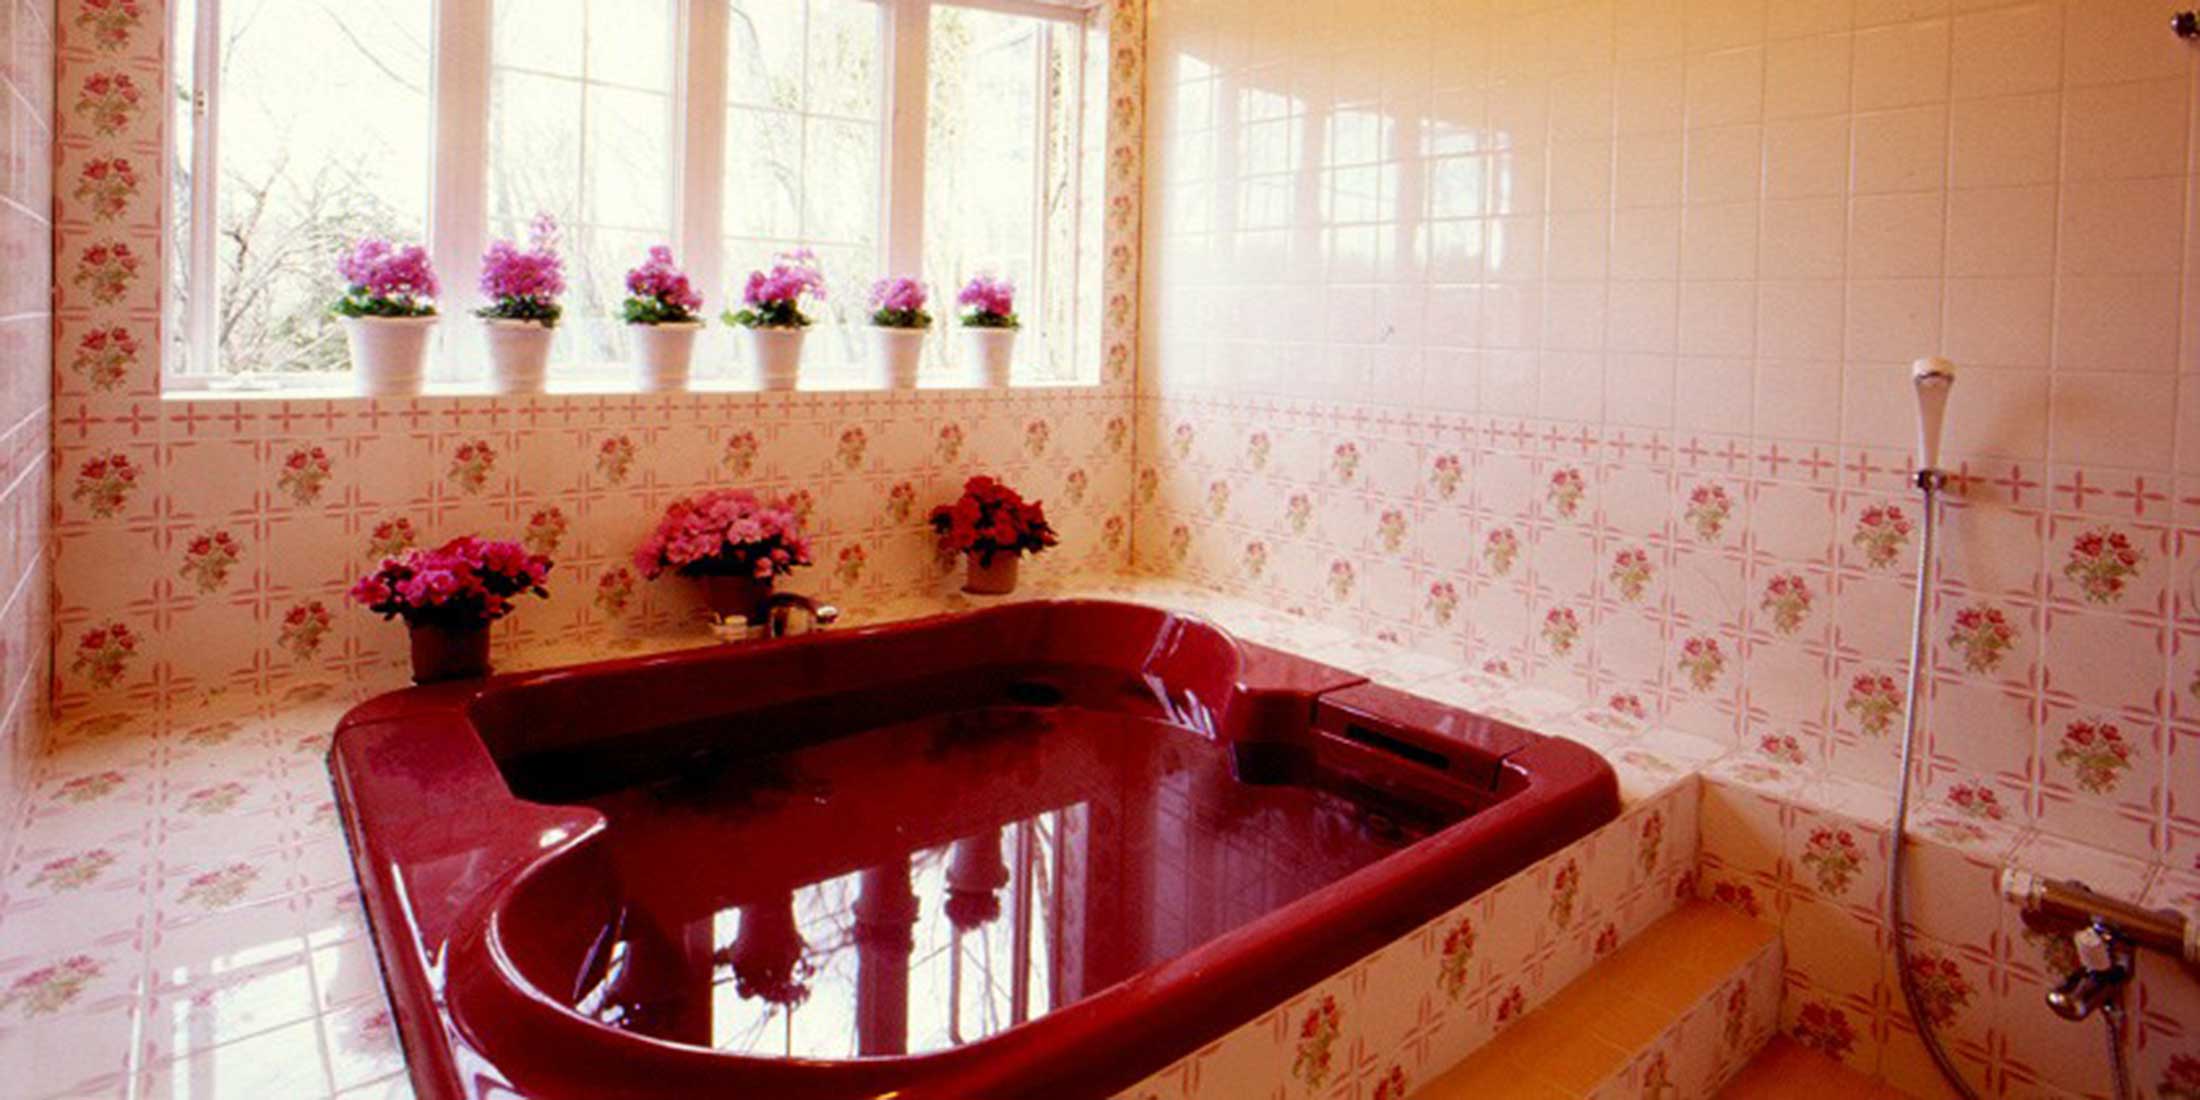 お洒落な無料貸切のお風呂 那須高原 那須温泉のペンション カントリーハウス パディントン 公式